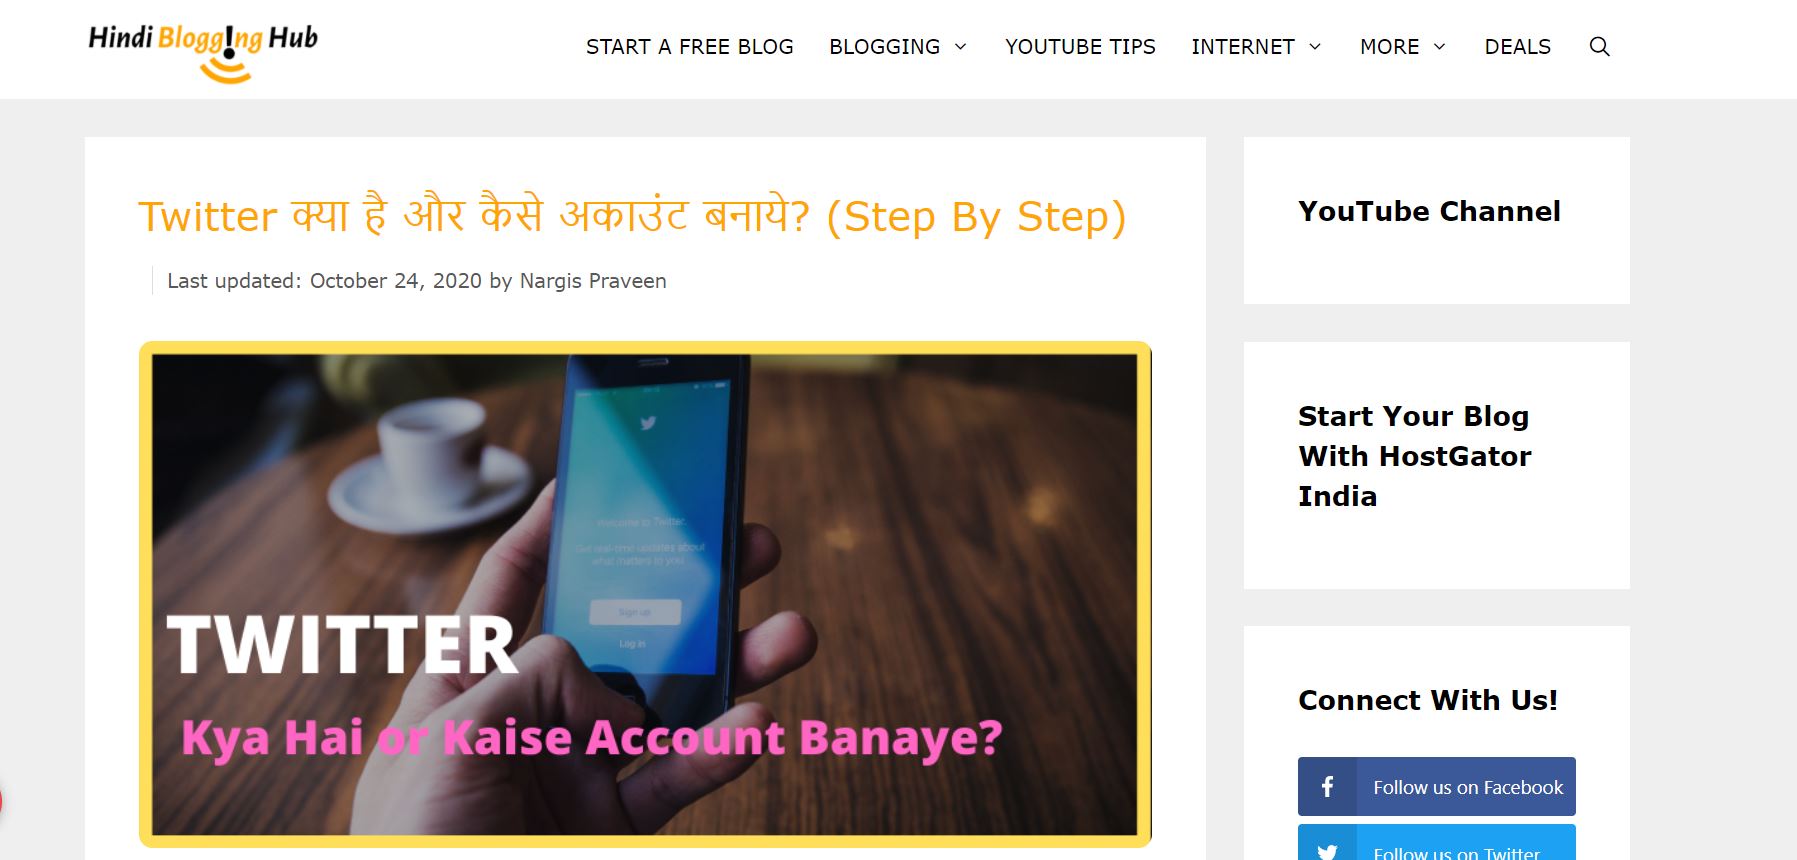 Hindi Blogging Hub